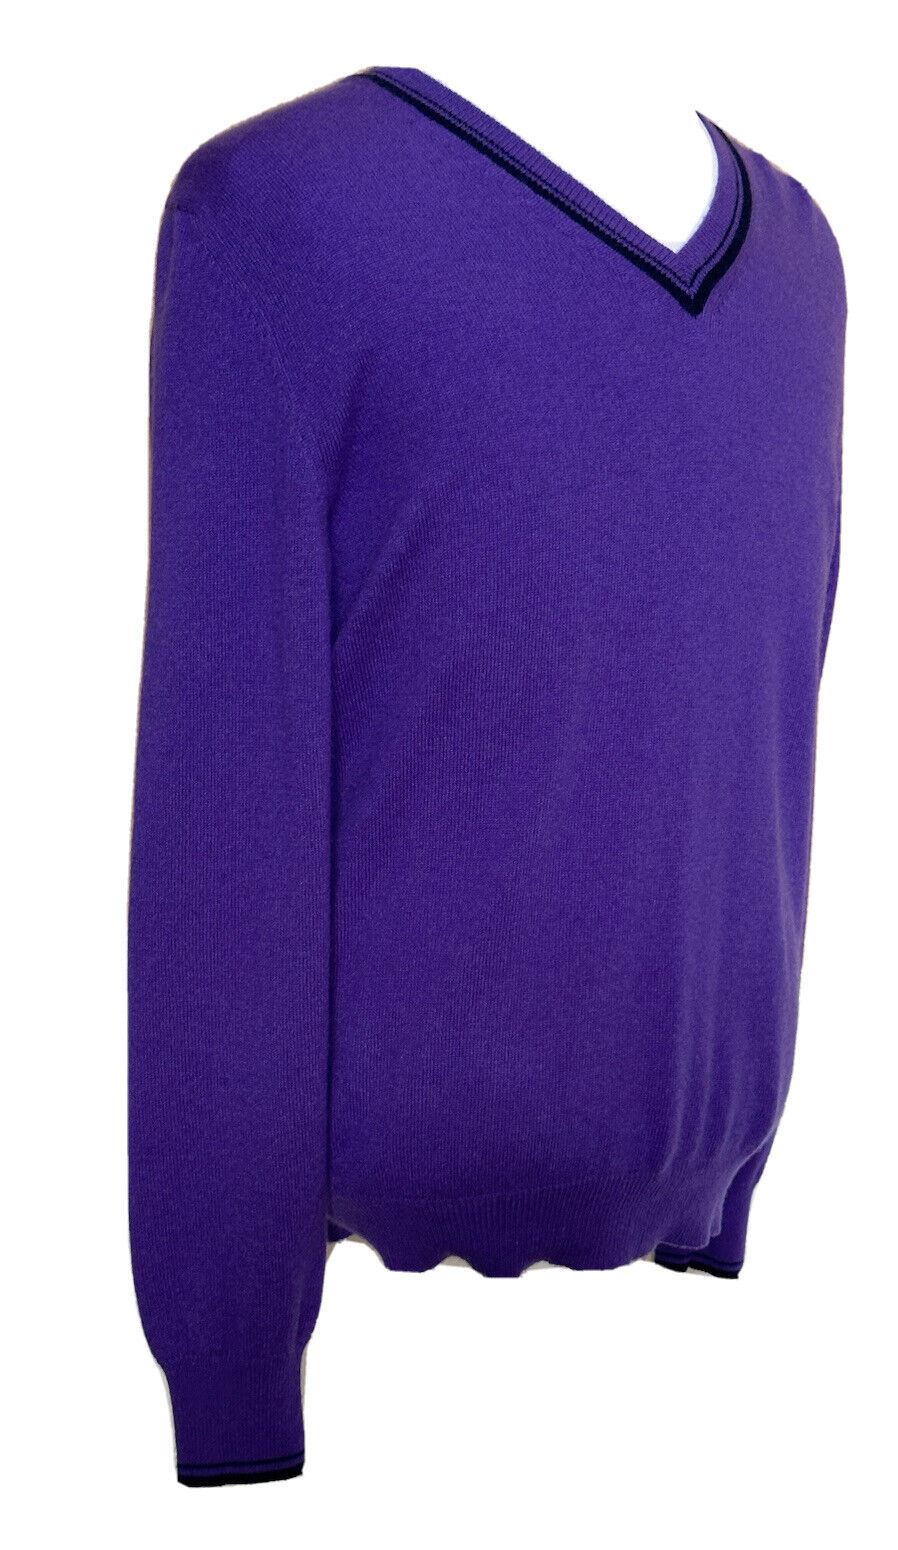 ETRO Мужской мягкий фиолетовый свитер с v-образным вырезом, средний размер